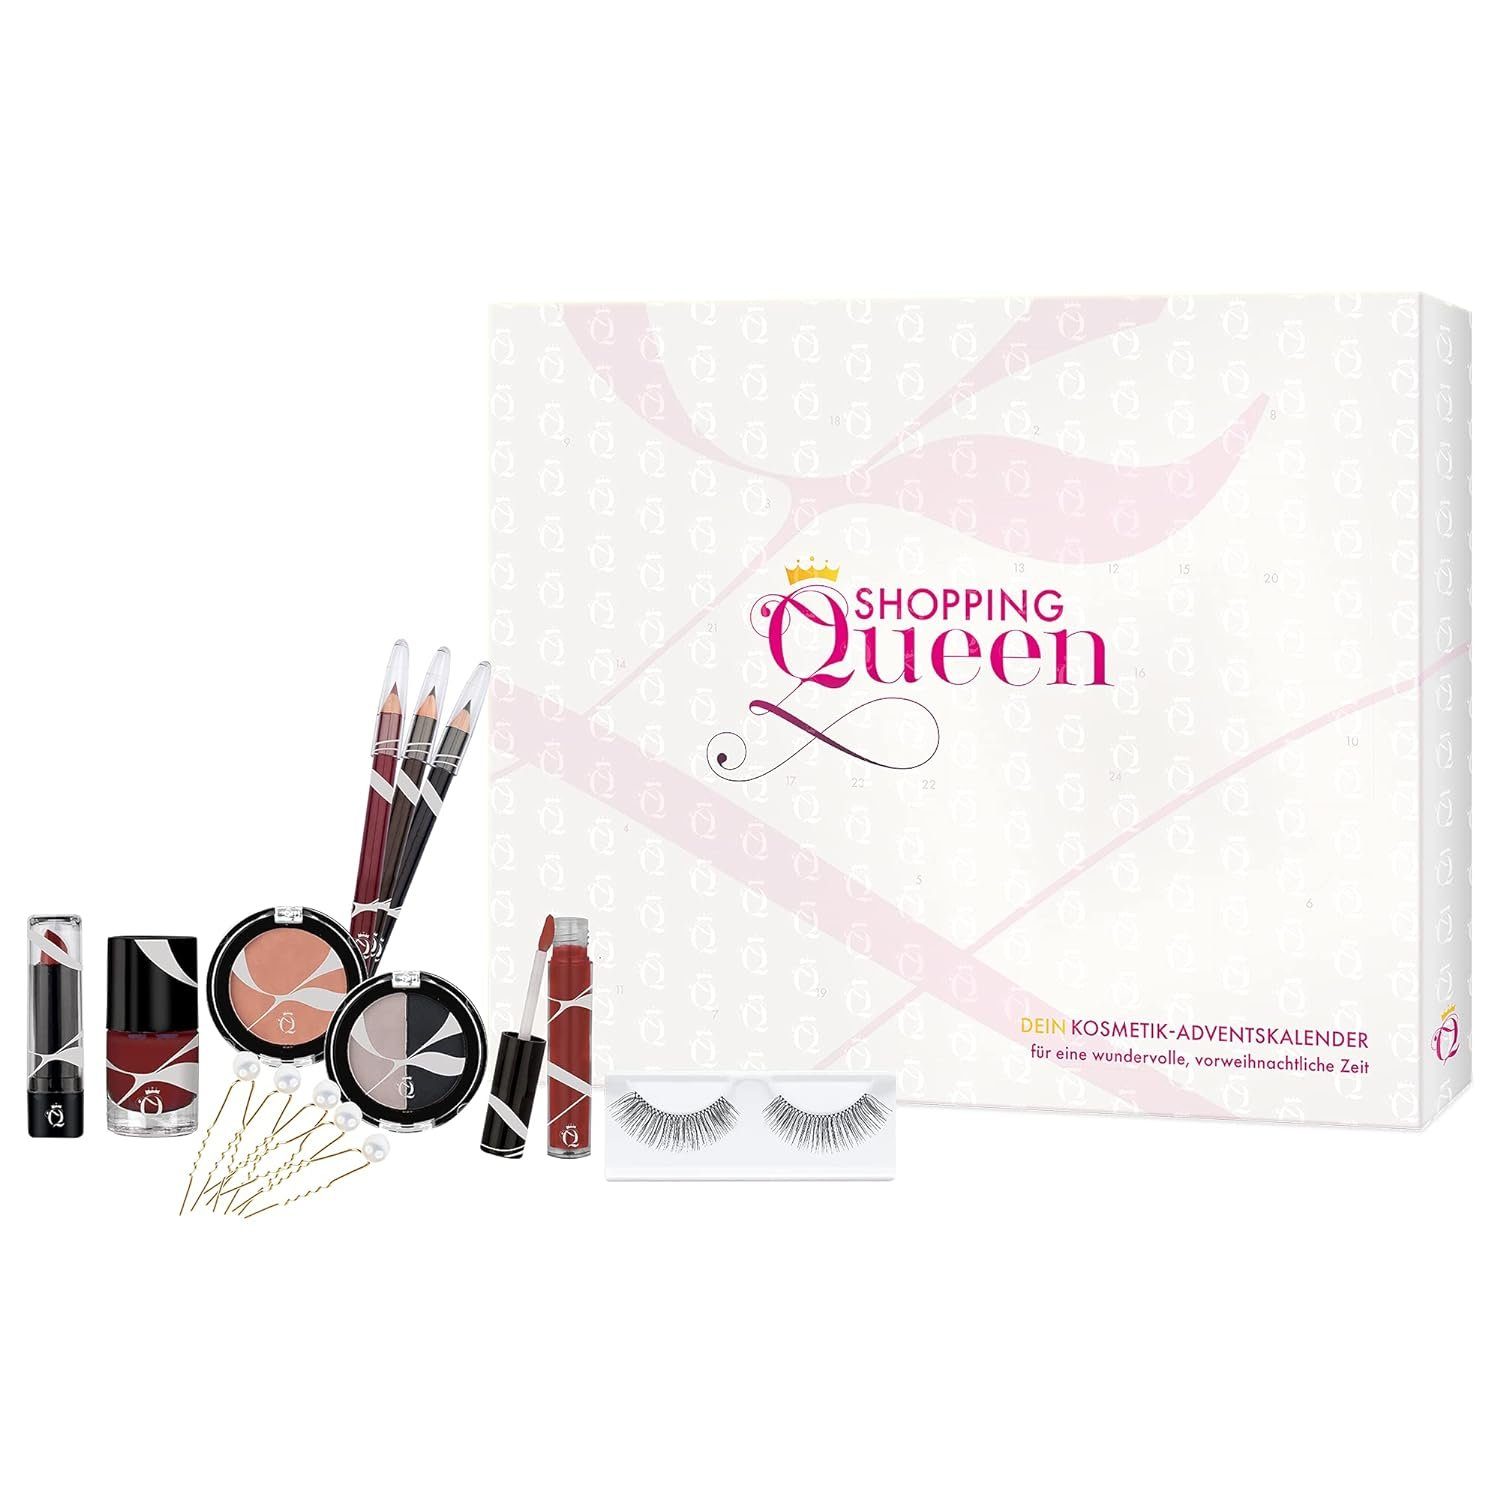 Shopping Queen Adventskalender Shopping Queen - Dein Kosmetik-Adventskalender